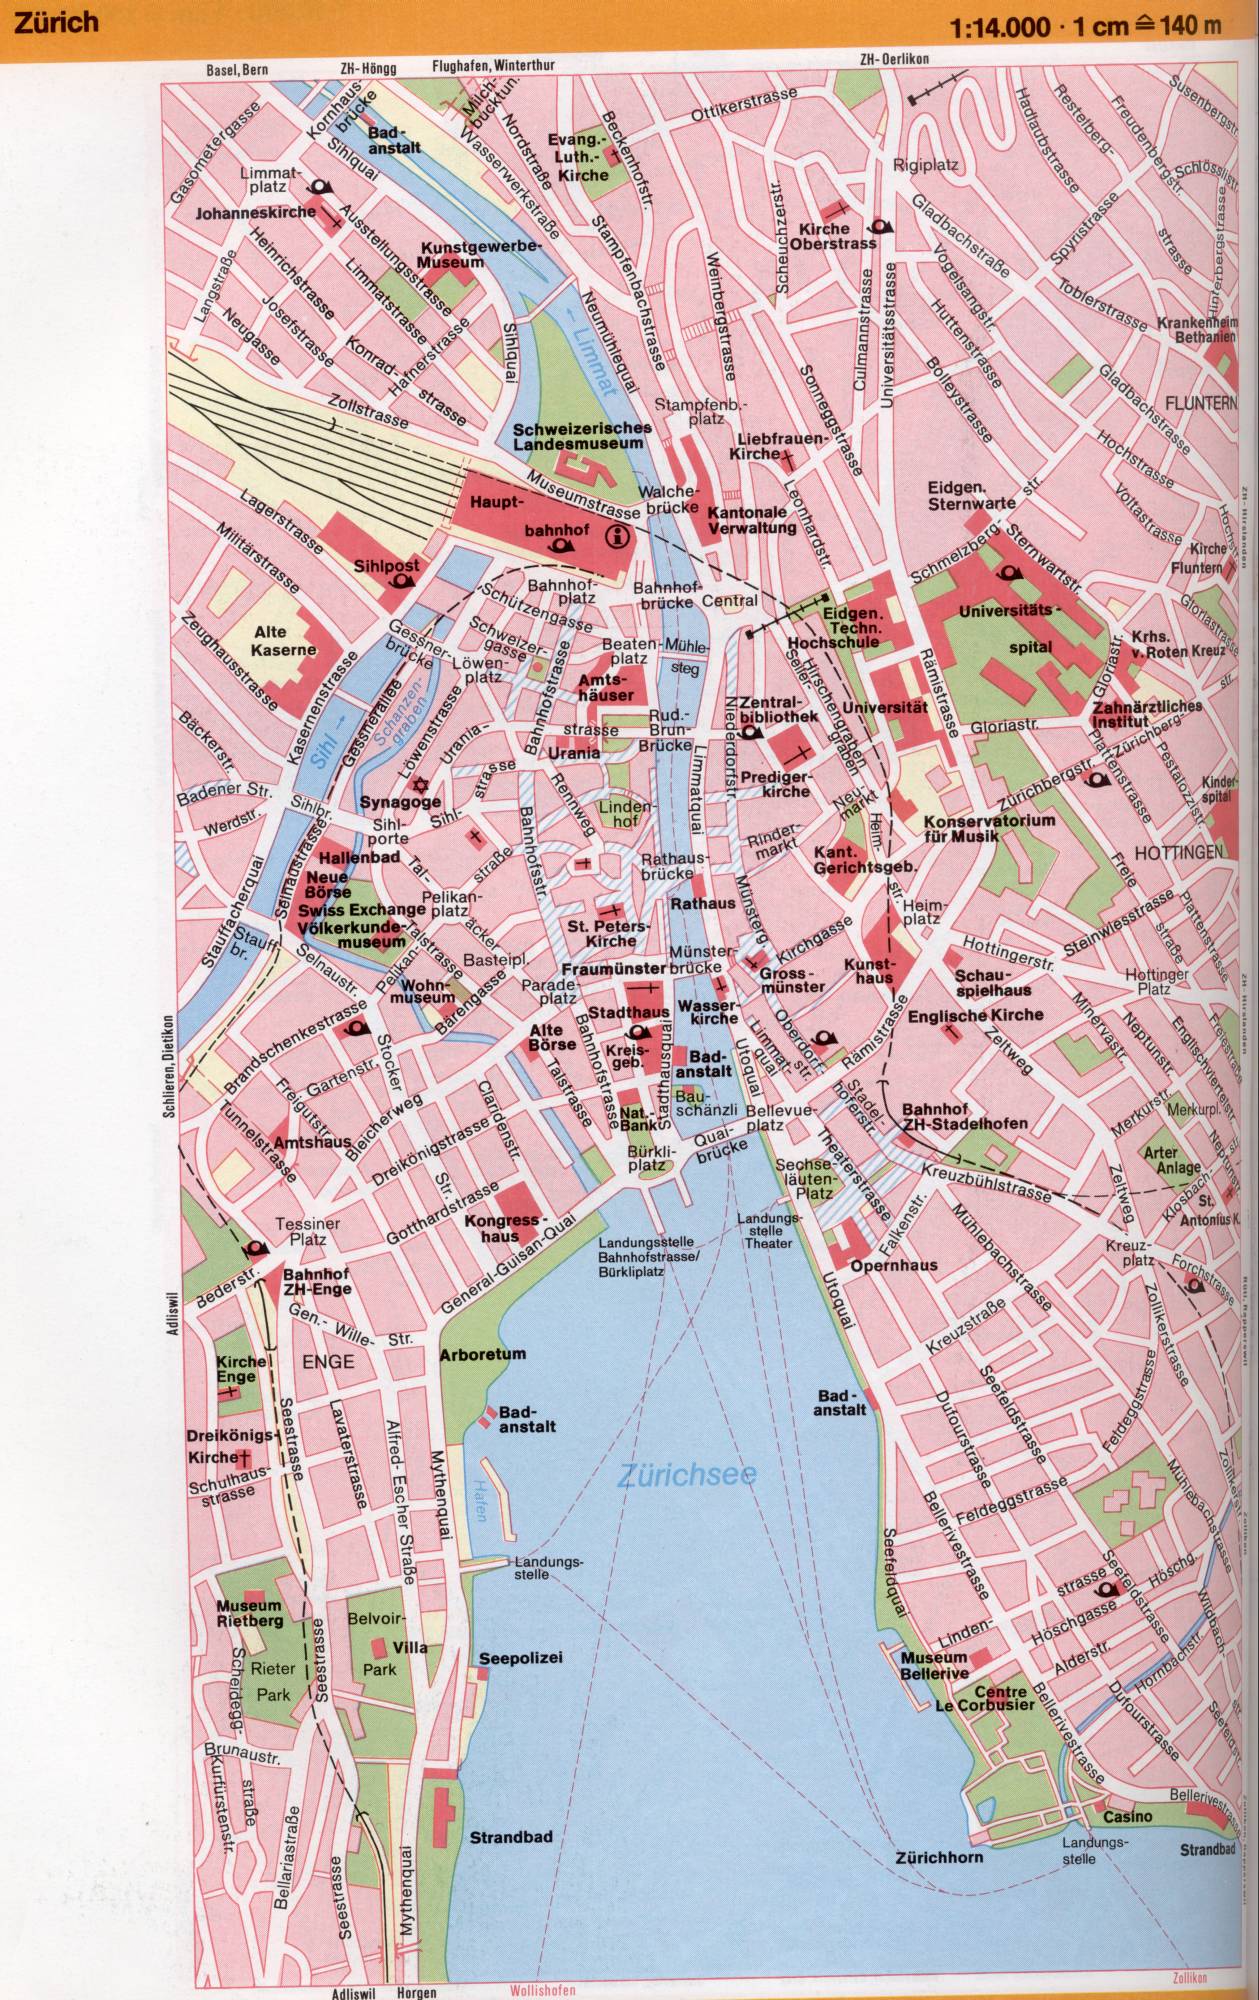 Zürich Karte der Schweiz 1cm = 140m Karte von Zürich Z & uumlrich